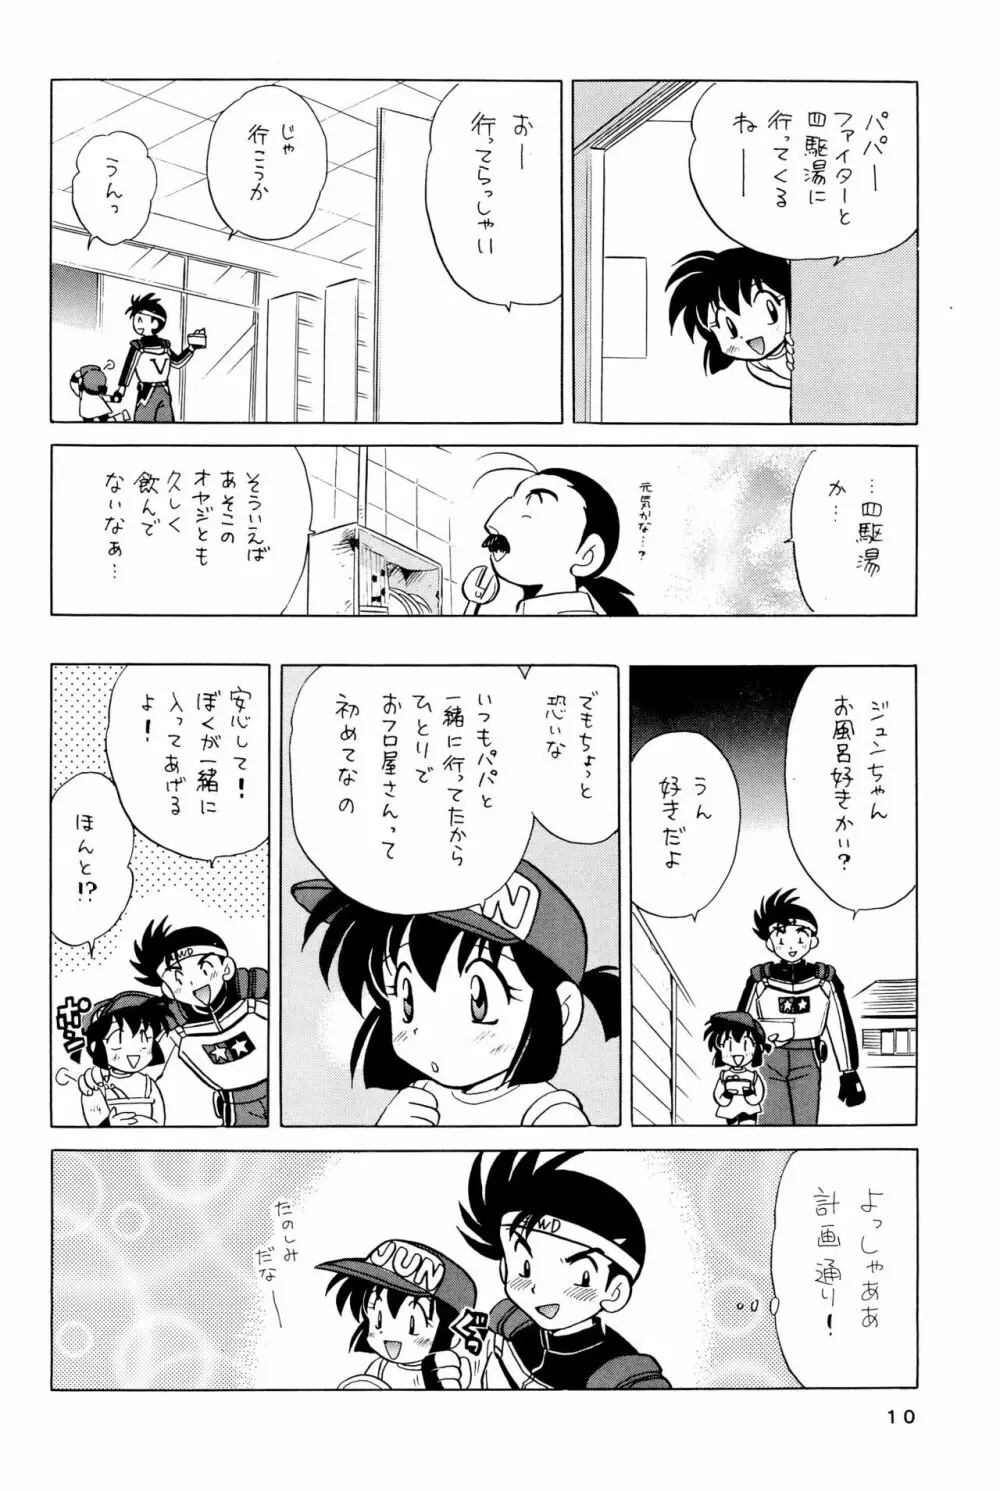 四駆遊戯 巻之弐 10ページ